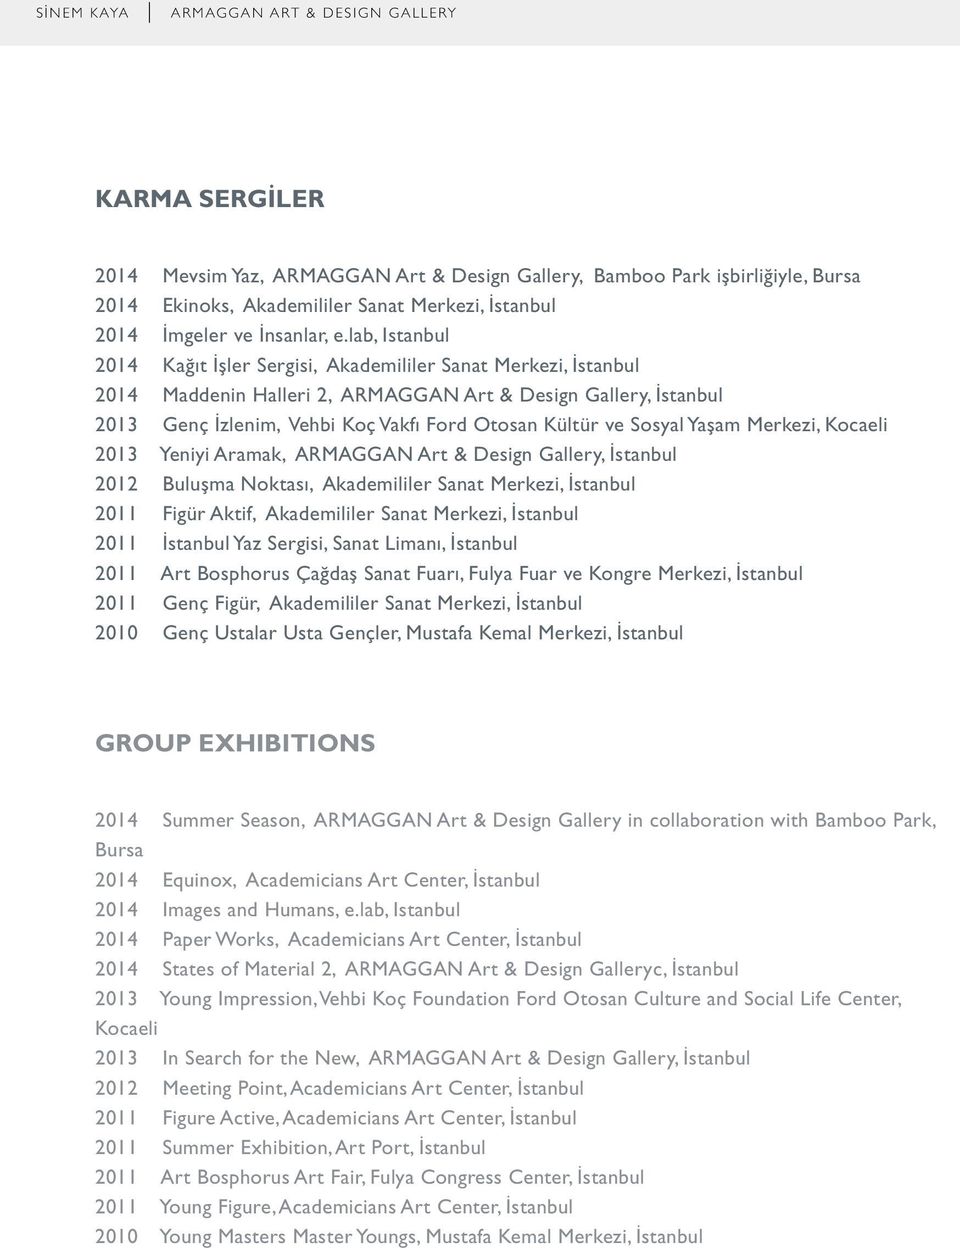 Sosyal Yaşam Merkezi, Kocaeli 2013 Yeniyi Aramak, ARMAGGAN Art & Design Gallery, İstanbul 2012 Buluşma Noktası, Akademililer Sanat Merkezi, İstanbul 2011 Figür Aktif, Akademililer Sanat Merkezi,